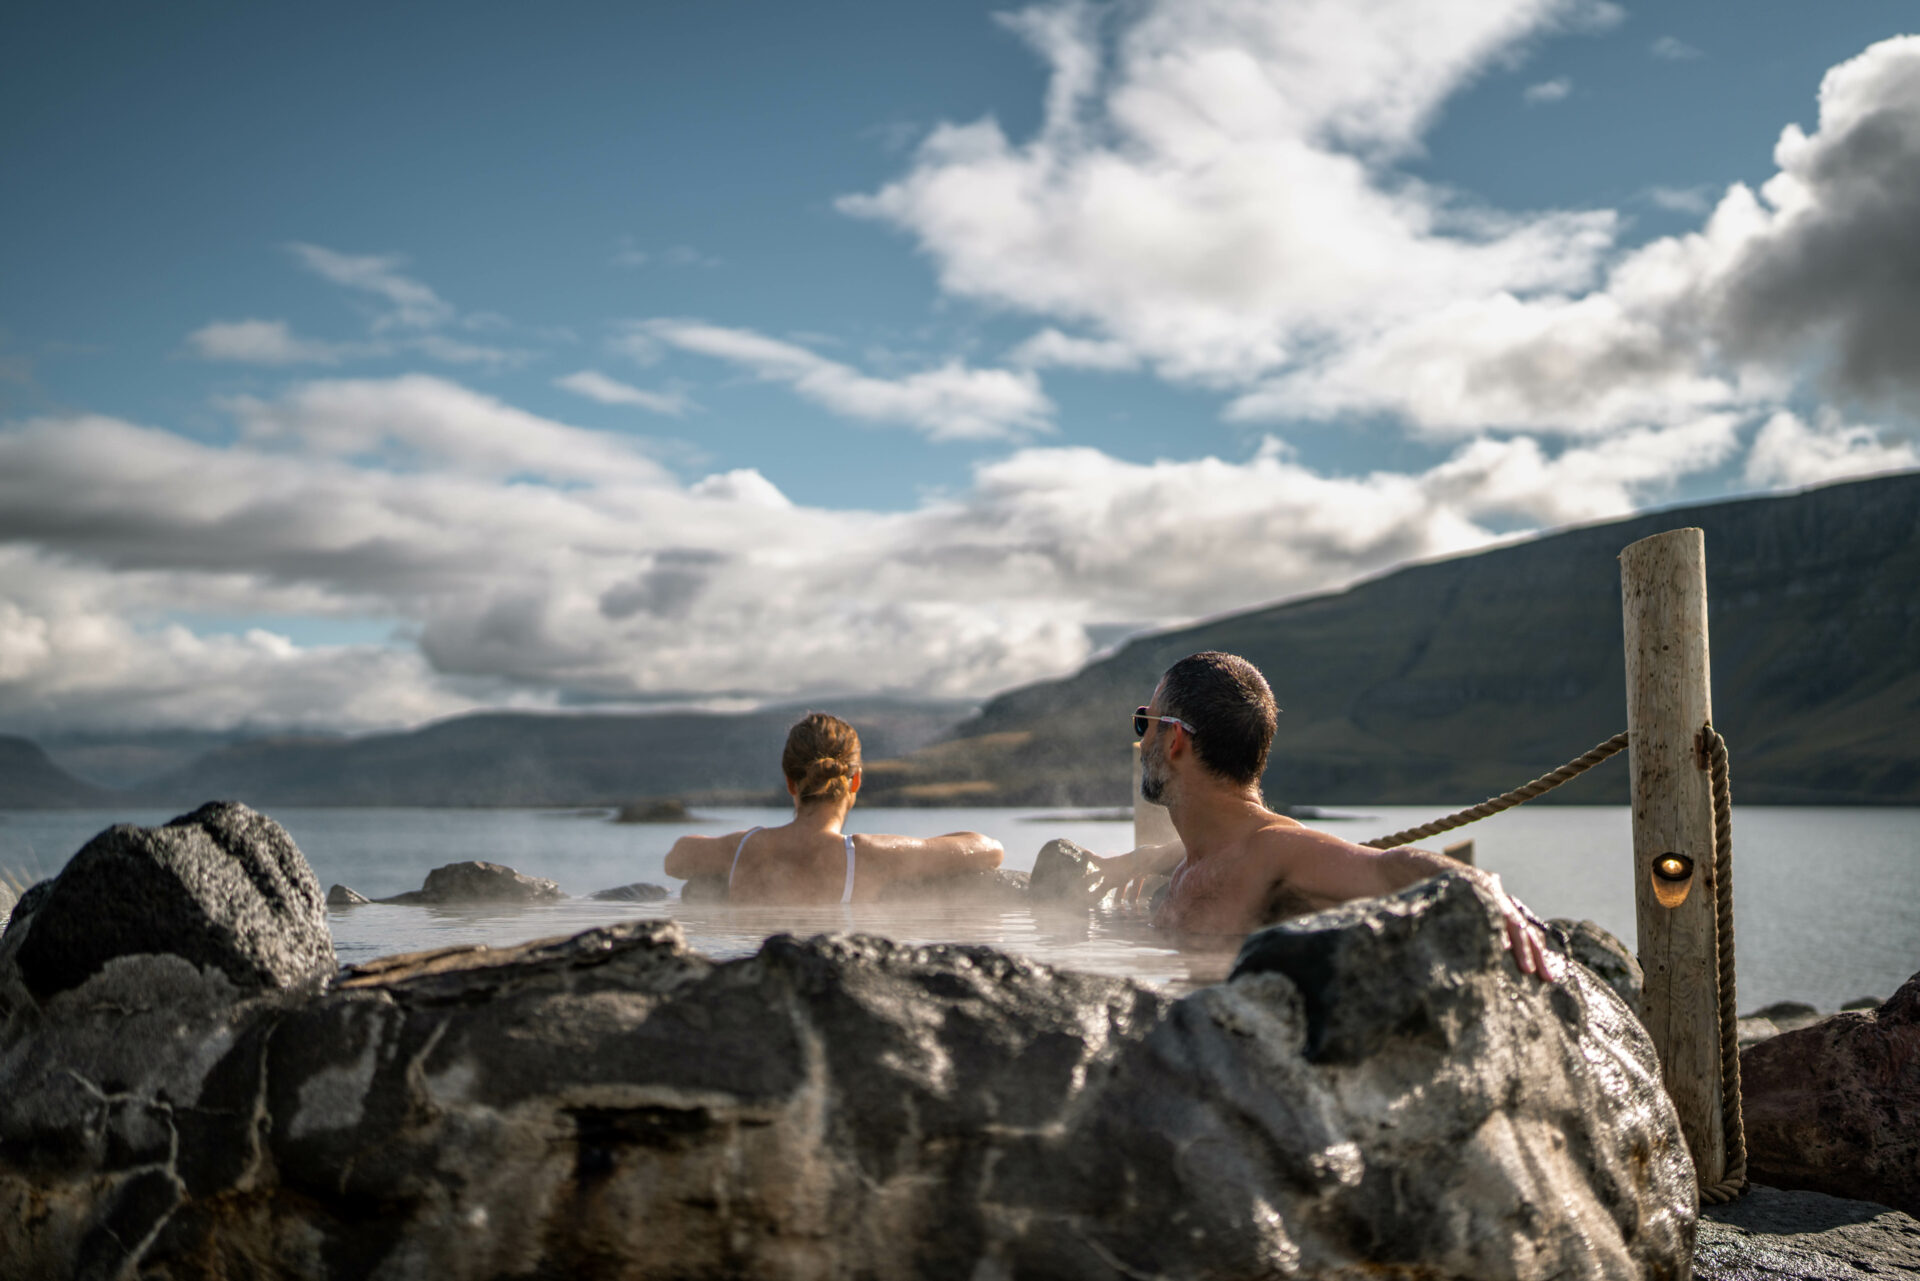 At Hvammsvik Hot Springs